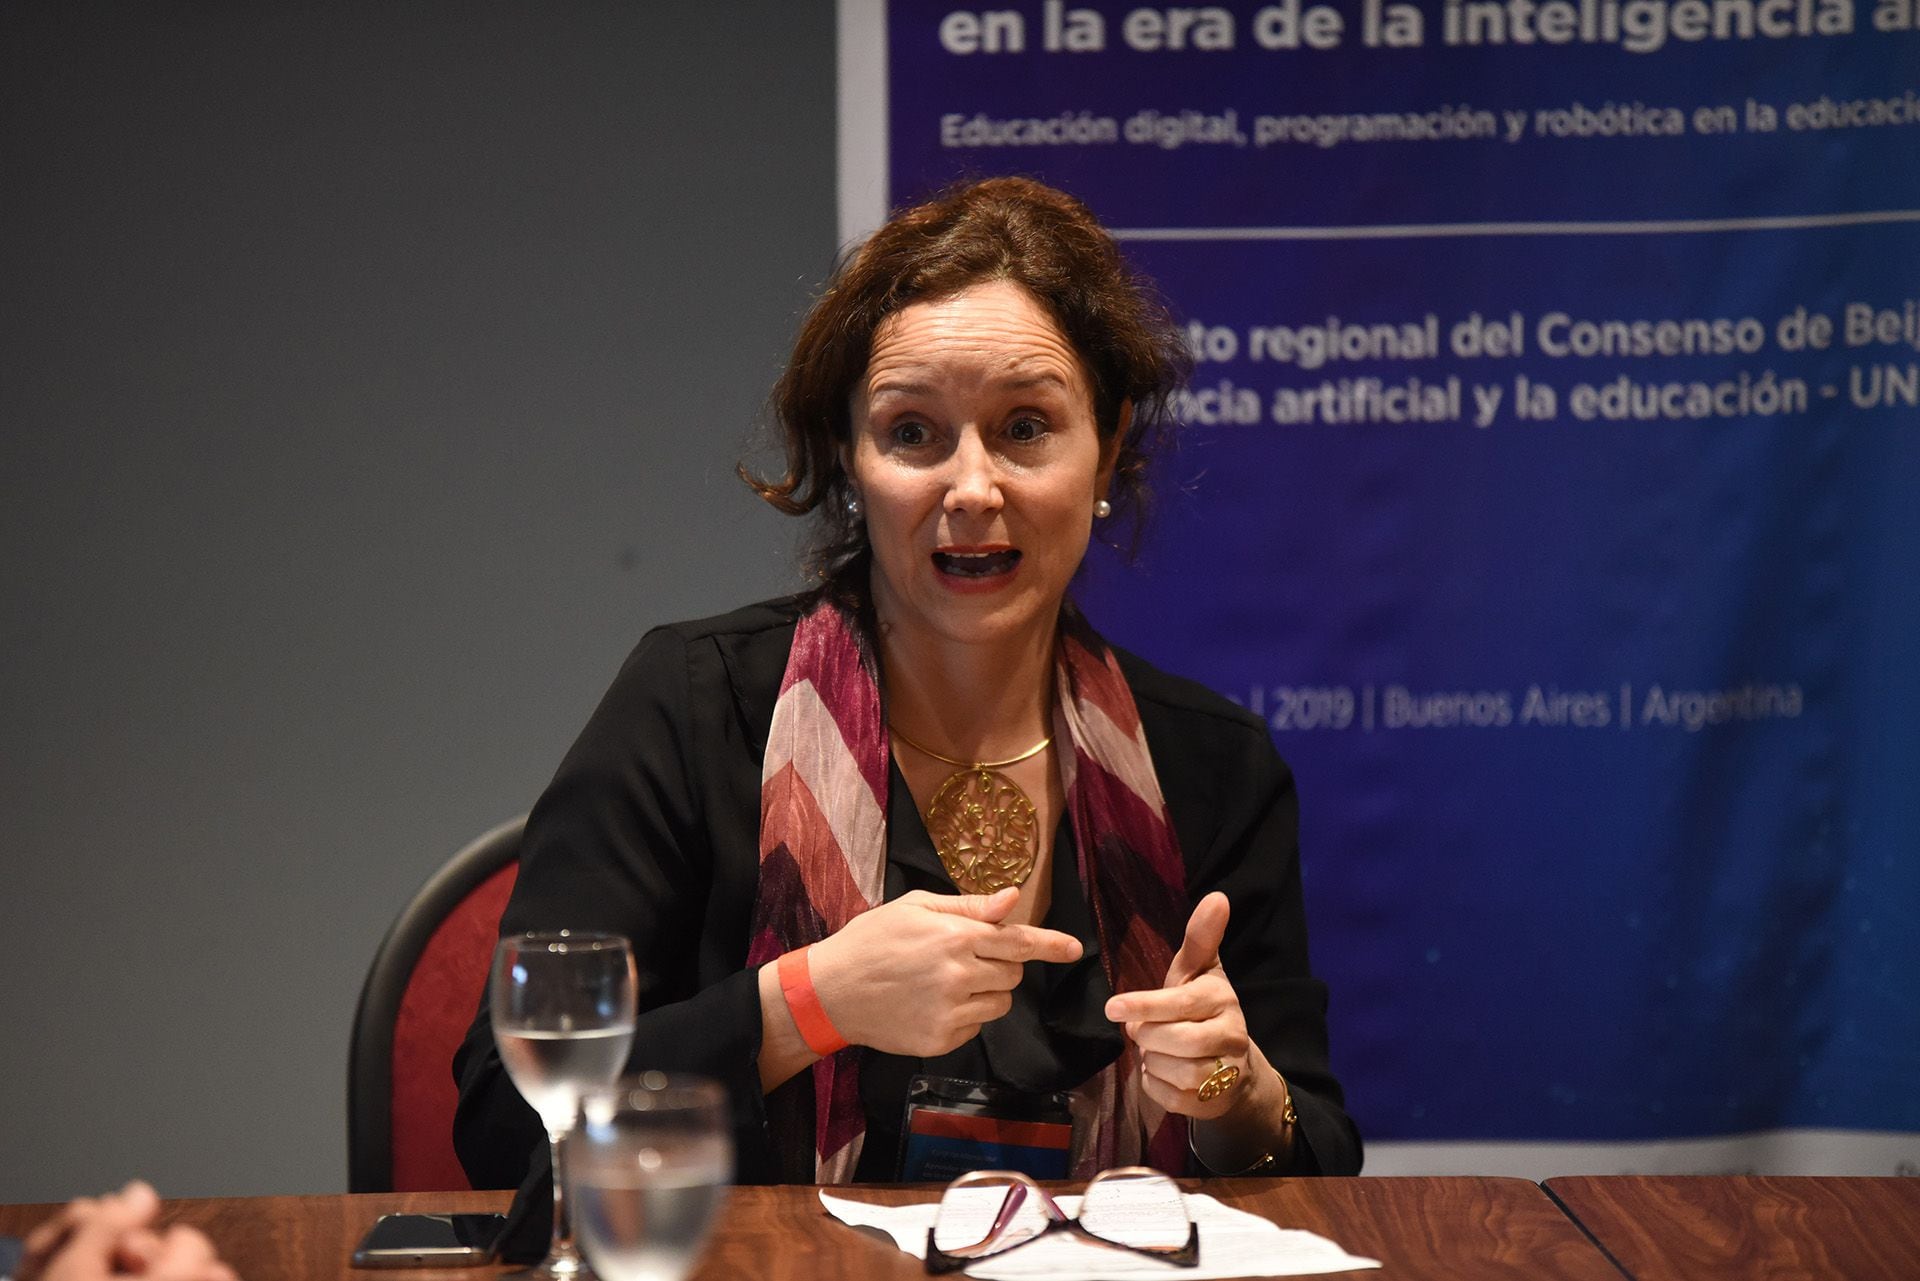 Florencia Ripani, directora nacional de innovación y calidad educativa